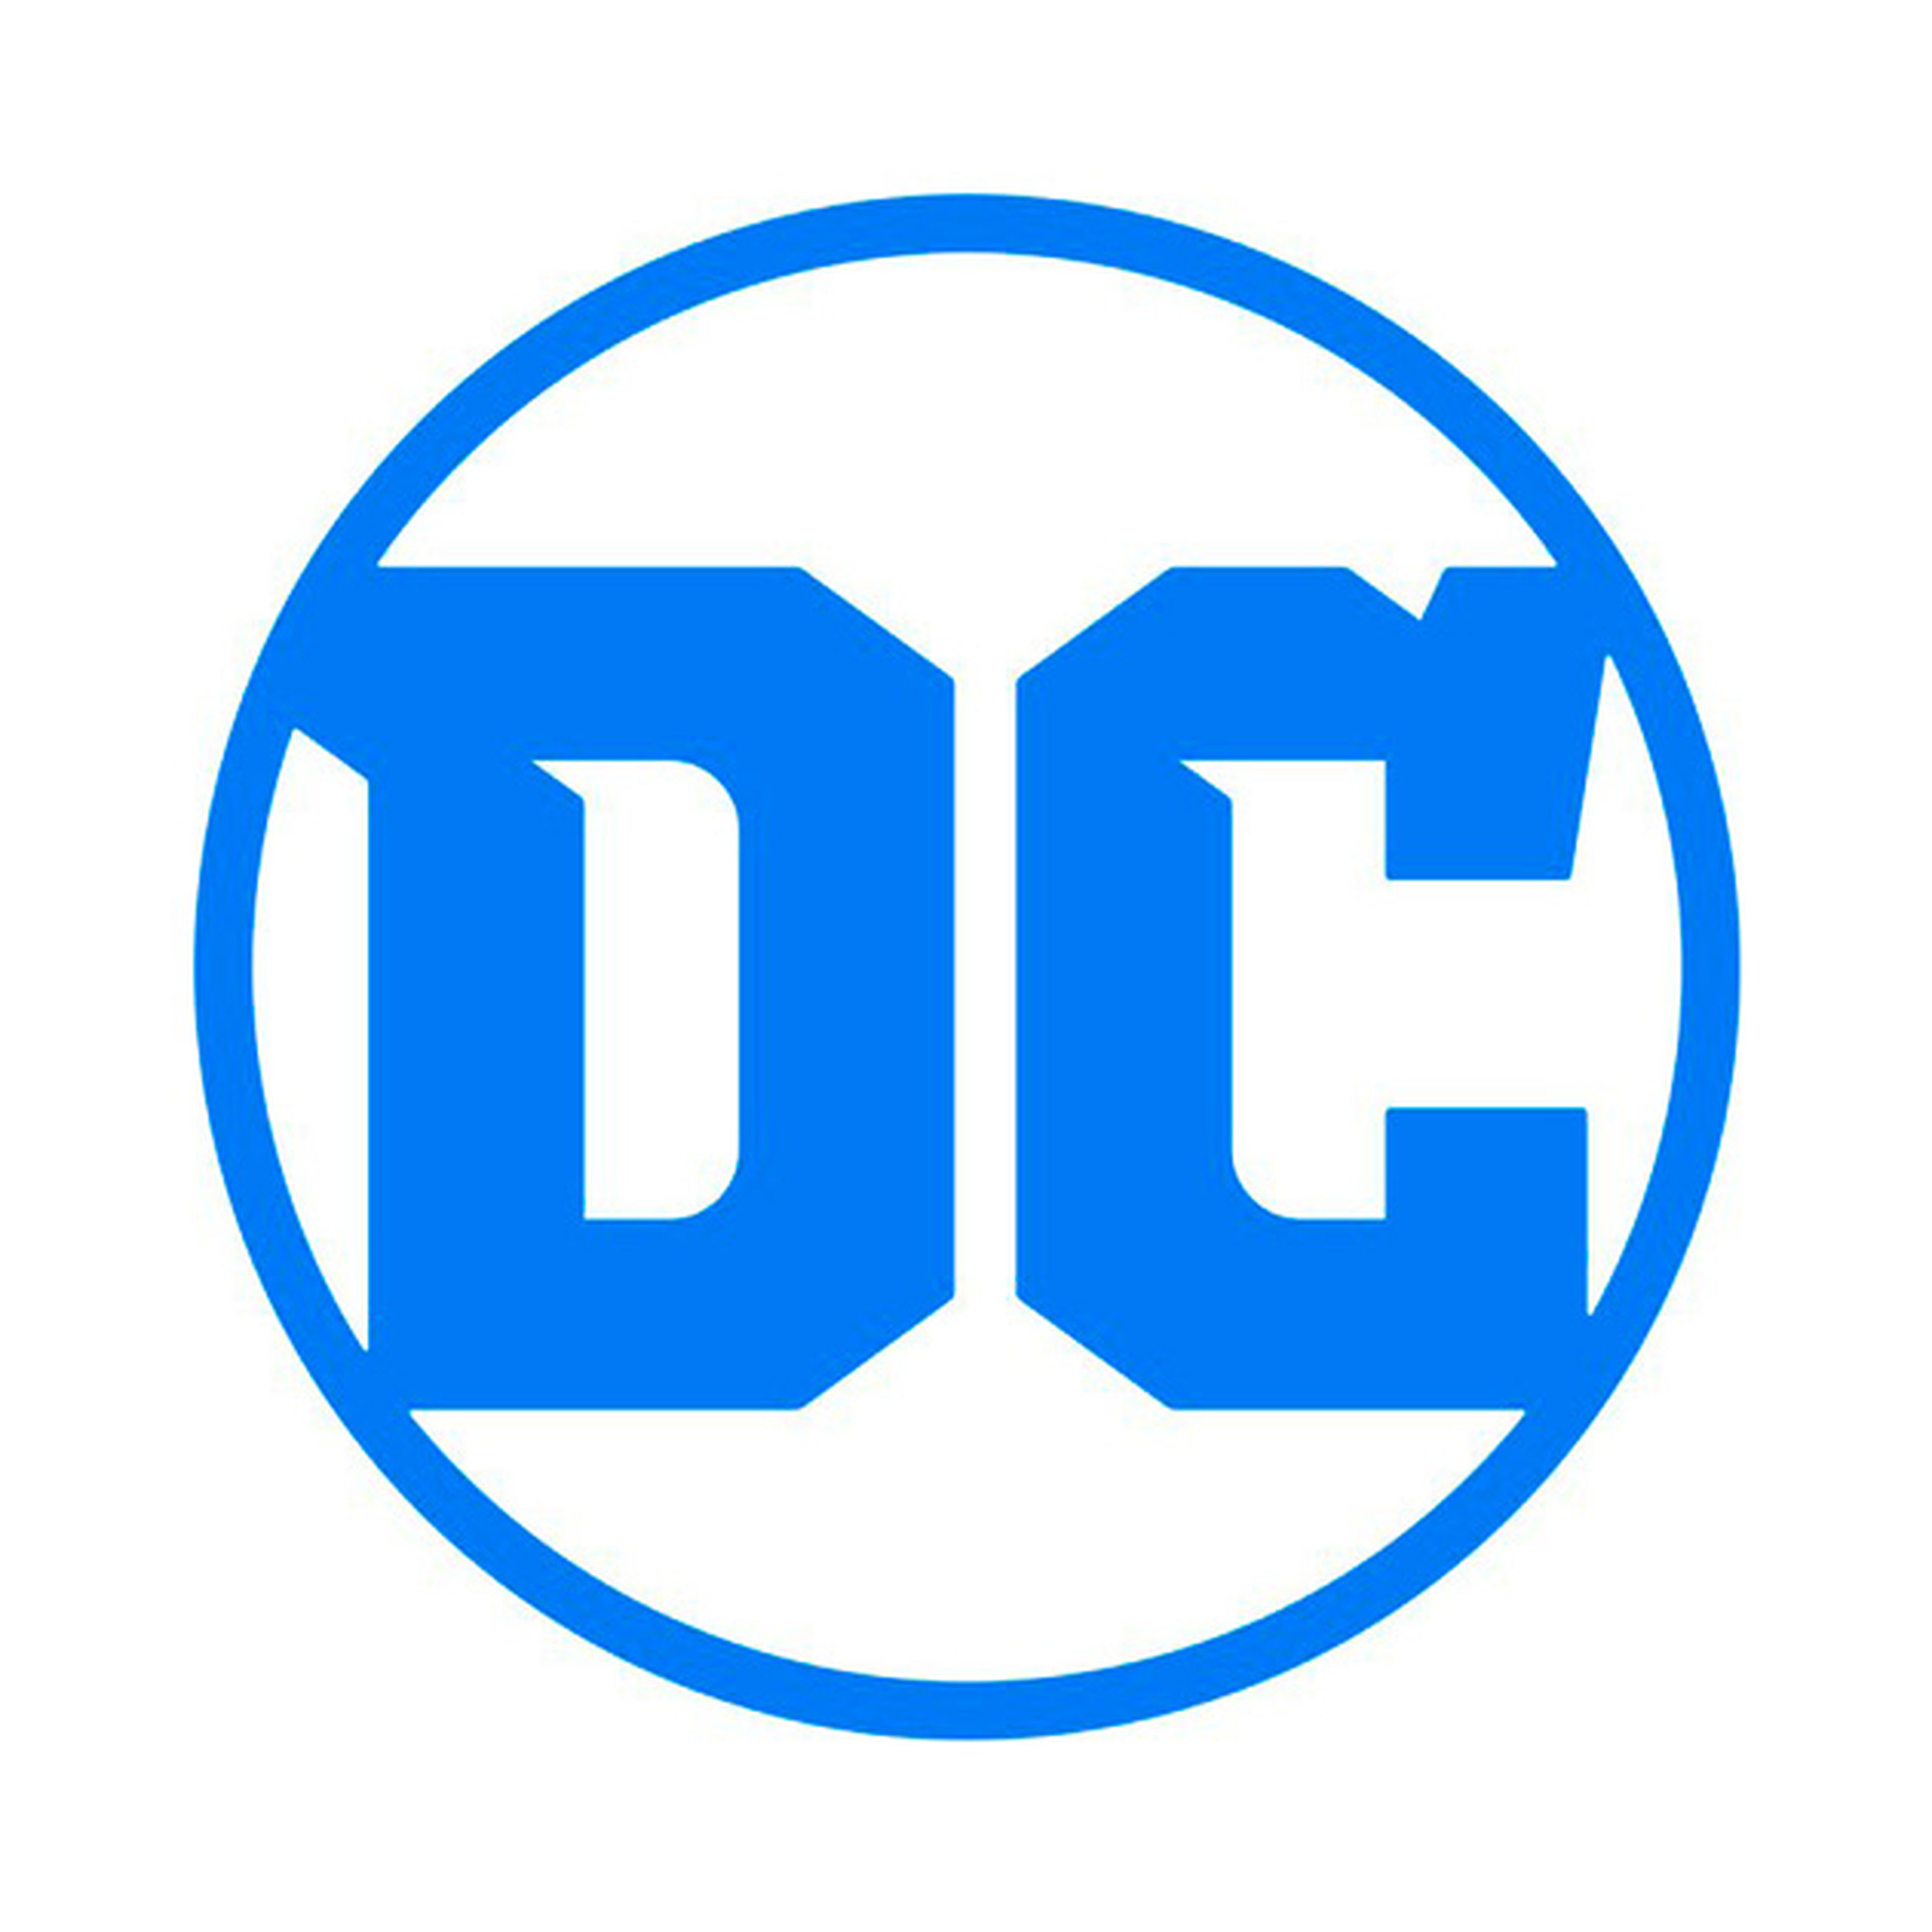 DC Cómics lanza su nuevo logotipo